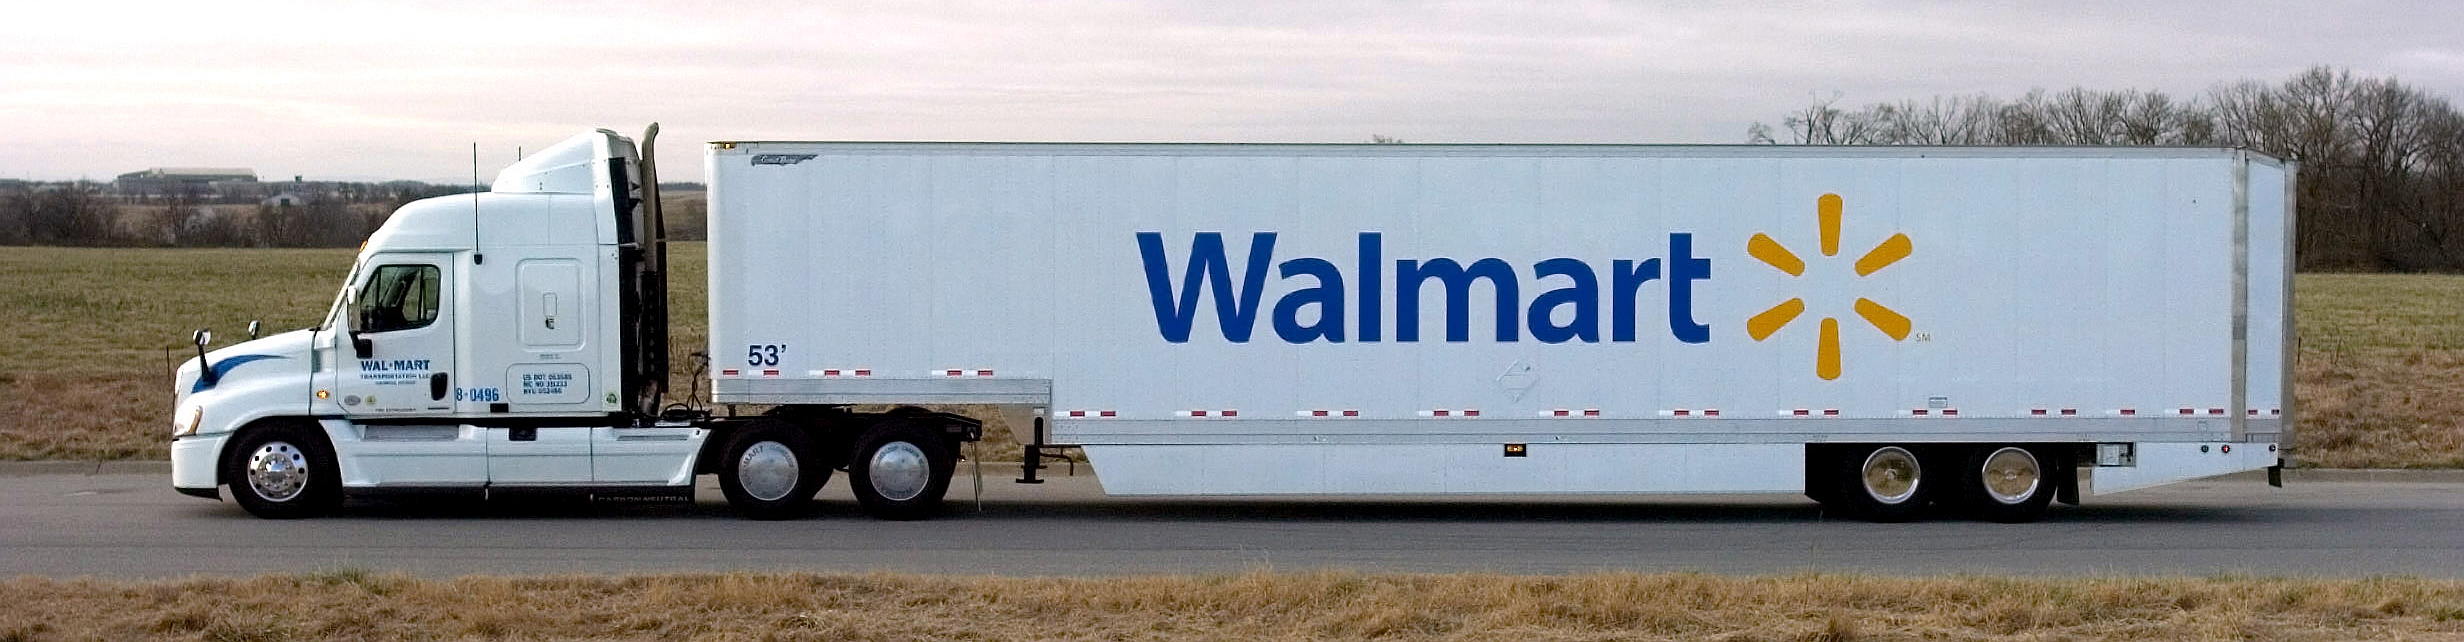 Walmart’s Grease Fuel Truck